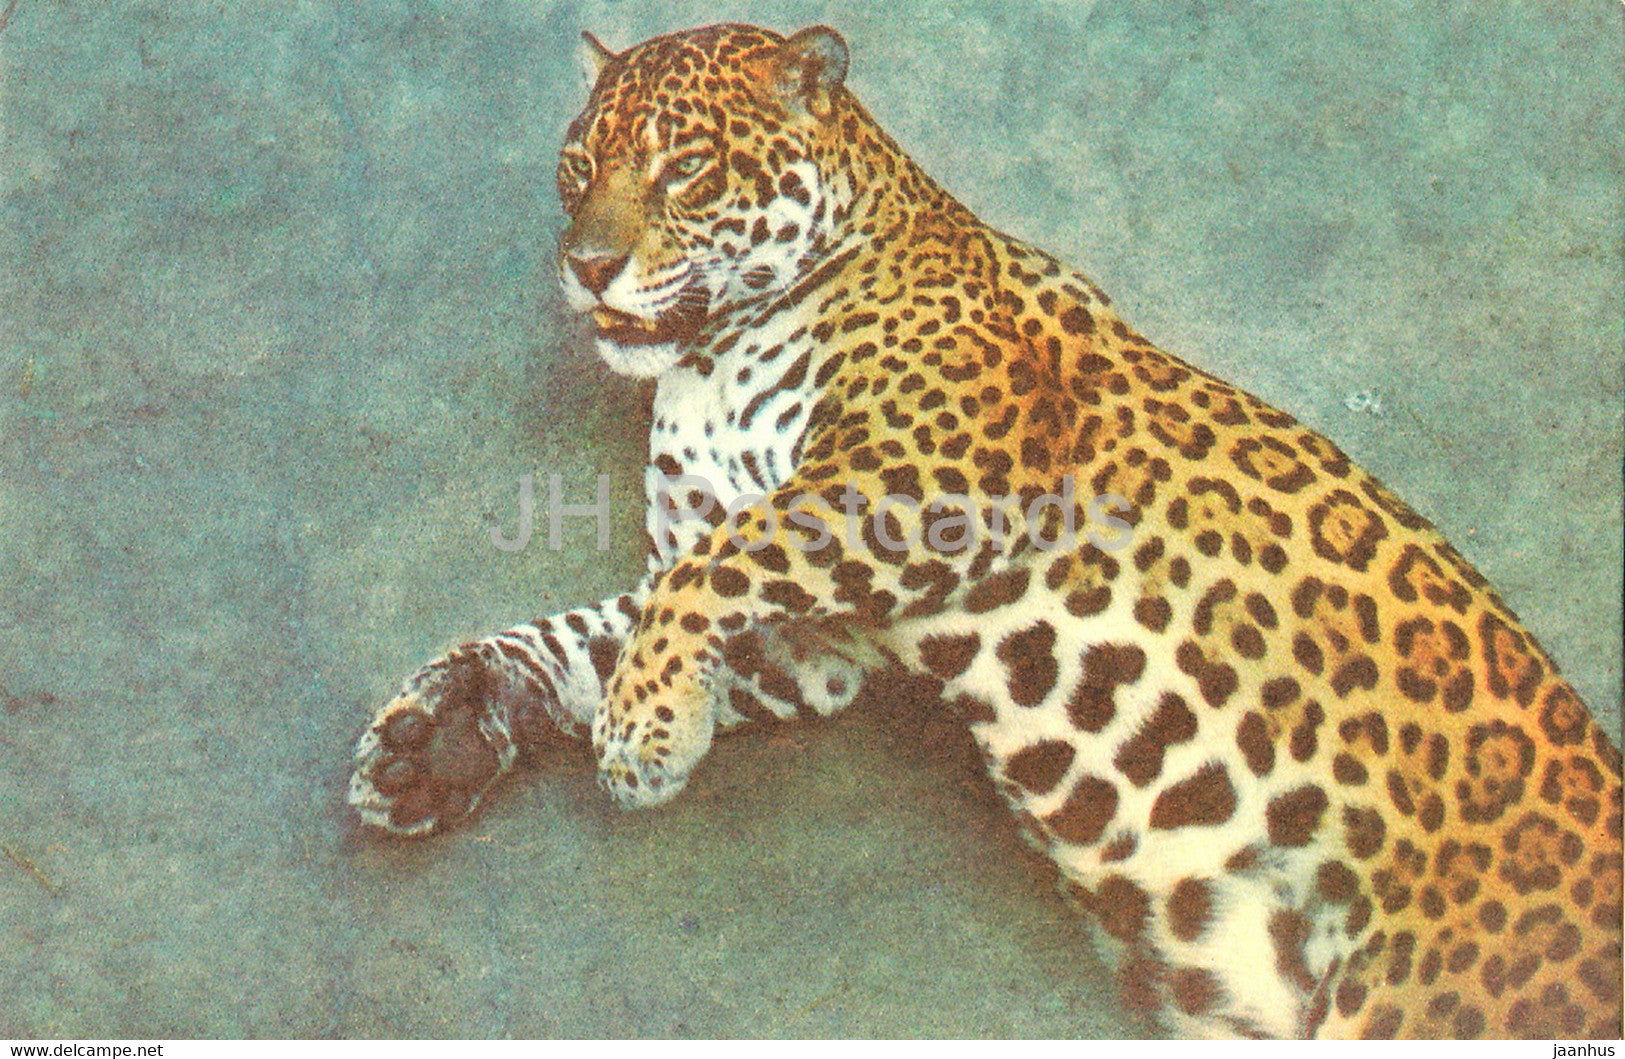 Jaguar - Panthera onca - Riga Zoo - Latvia USSR - unused - JH Postcards